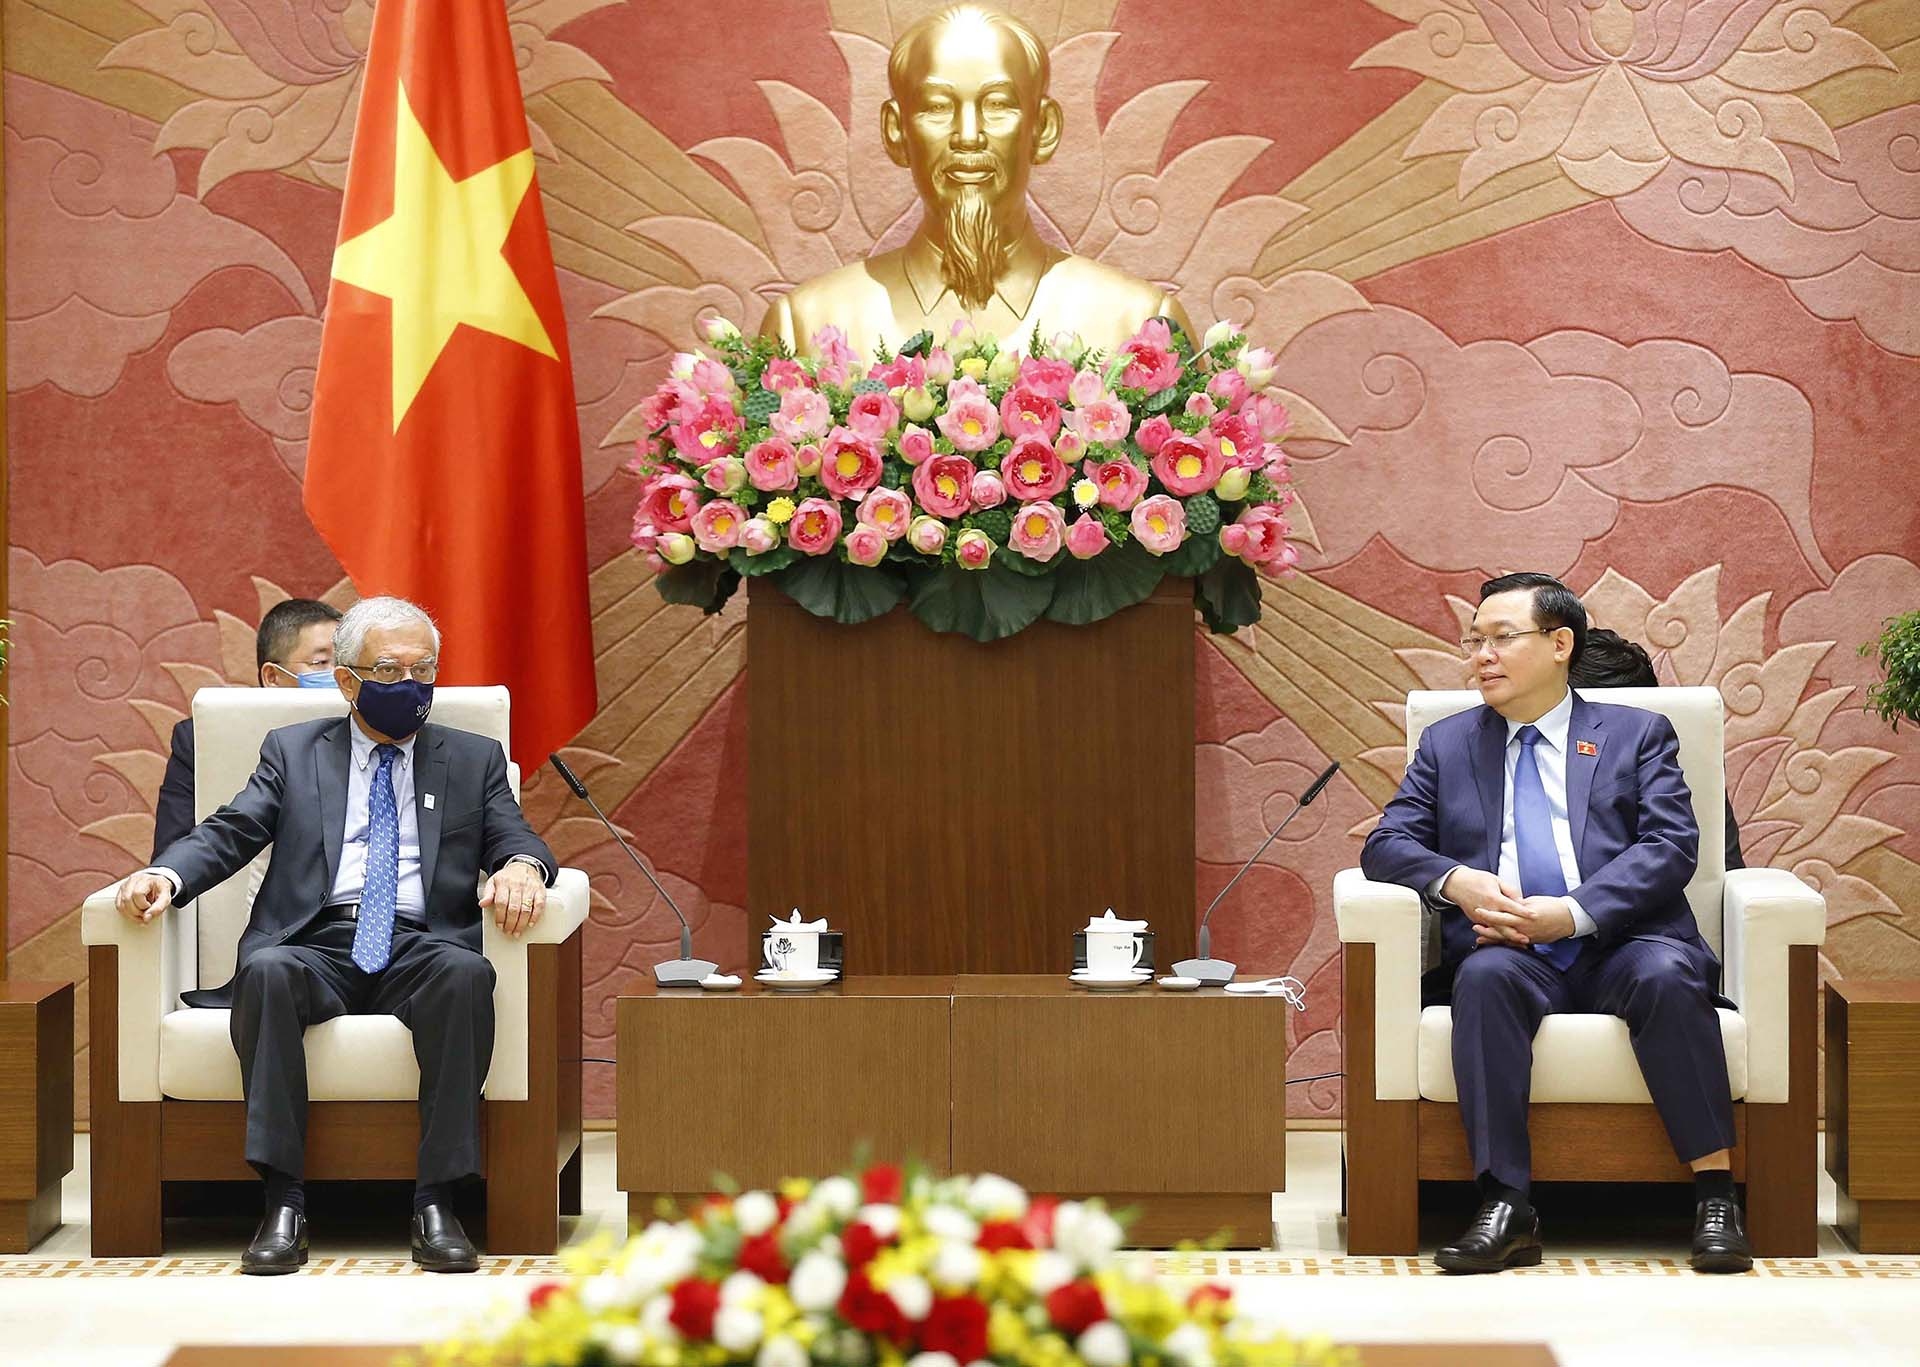 Chủ tịch Quốc hội Vương Đình Huệ tiếp ông Kamal Malhotra, Điều phối viên thường trú của Liên hợp quốc tại Việt Nam. (Nguồn: TTXVN)